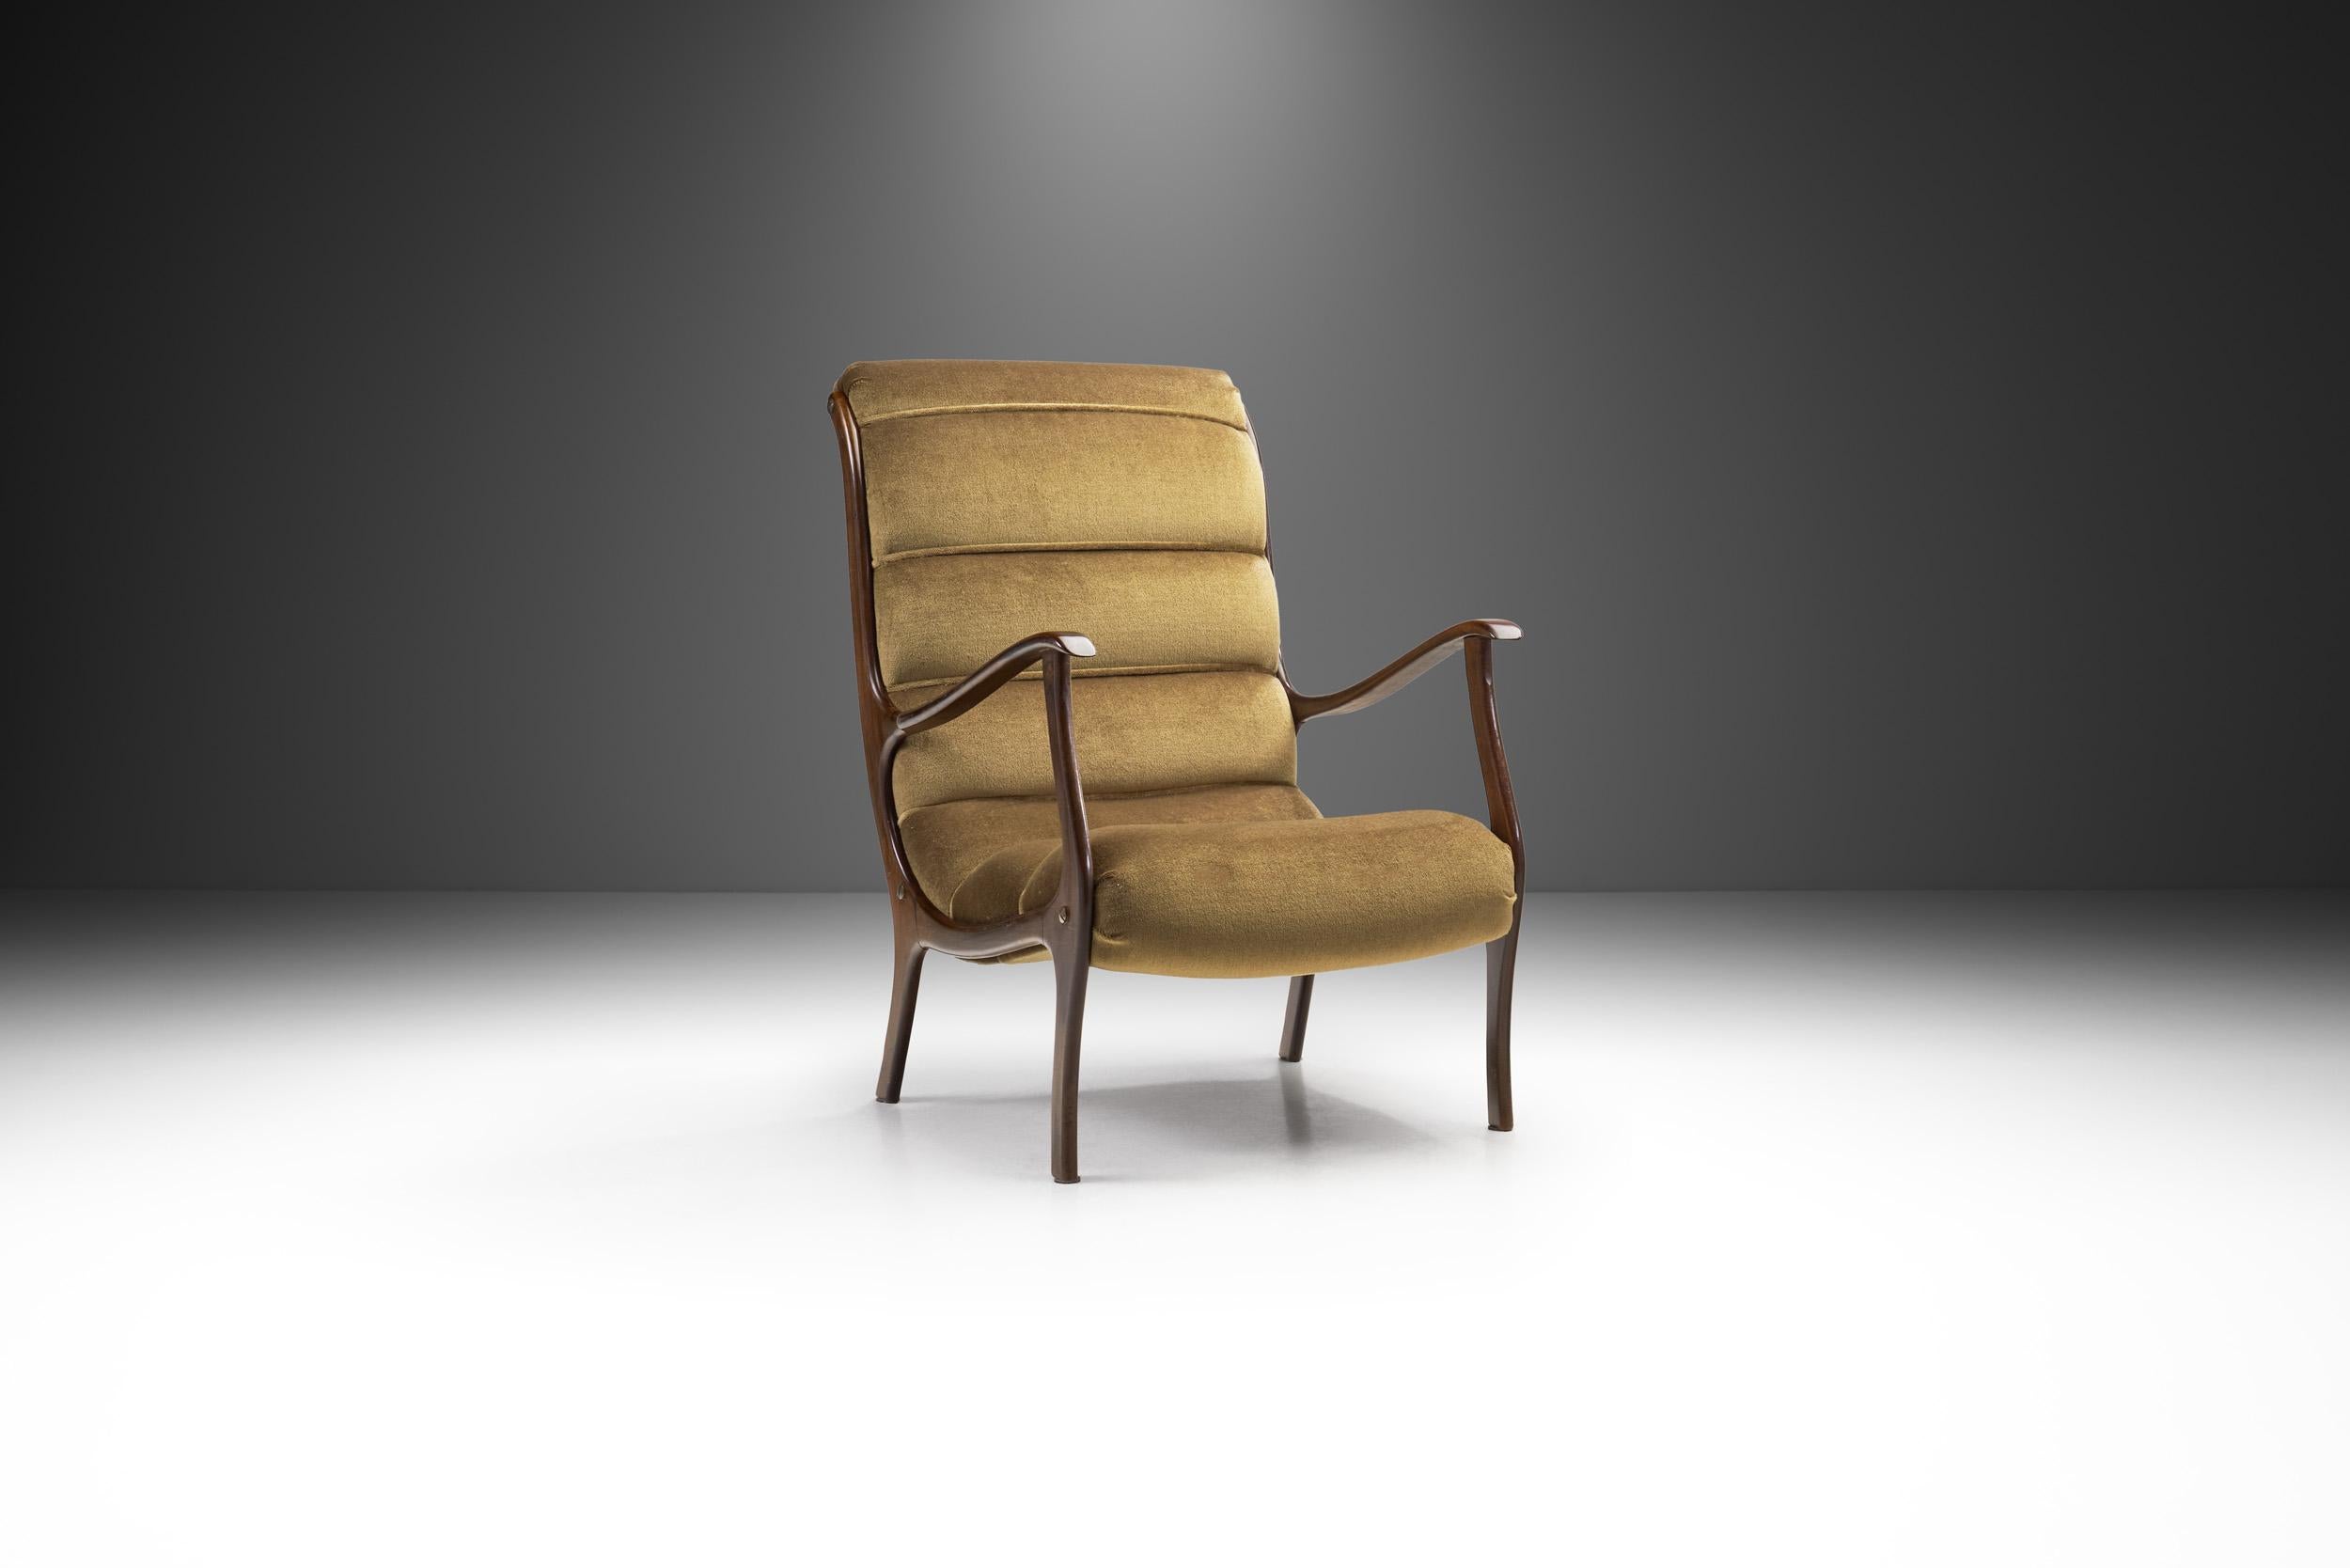 Wie der Sessel Mitzi von 1958 gehört dieses Modell zu den bekanntesten Stuhlentwürfen des italienischen Designers Ezio Longhi. Dieser Loungesessel versetzt uns in das Italien der Nachkriegszeit, als die heute weltberühmten Freiform-Designs der